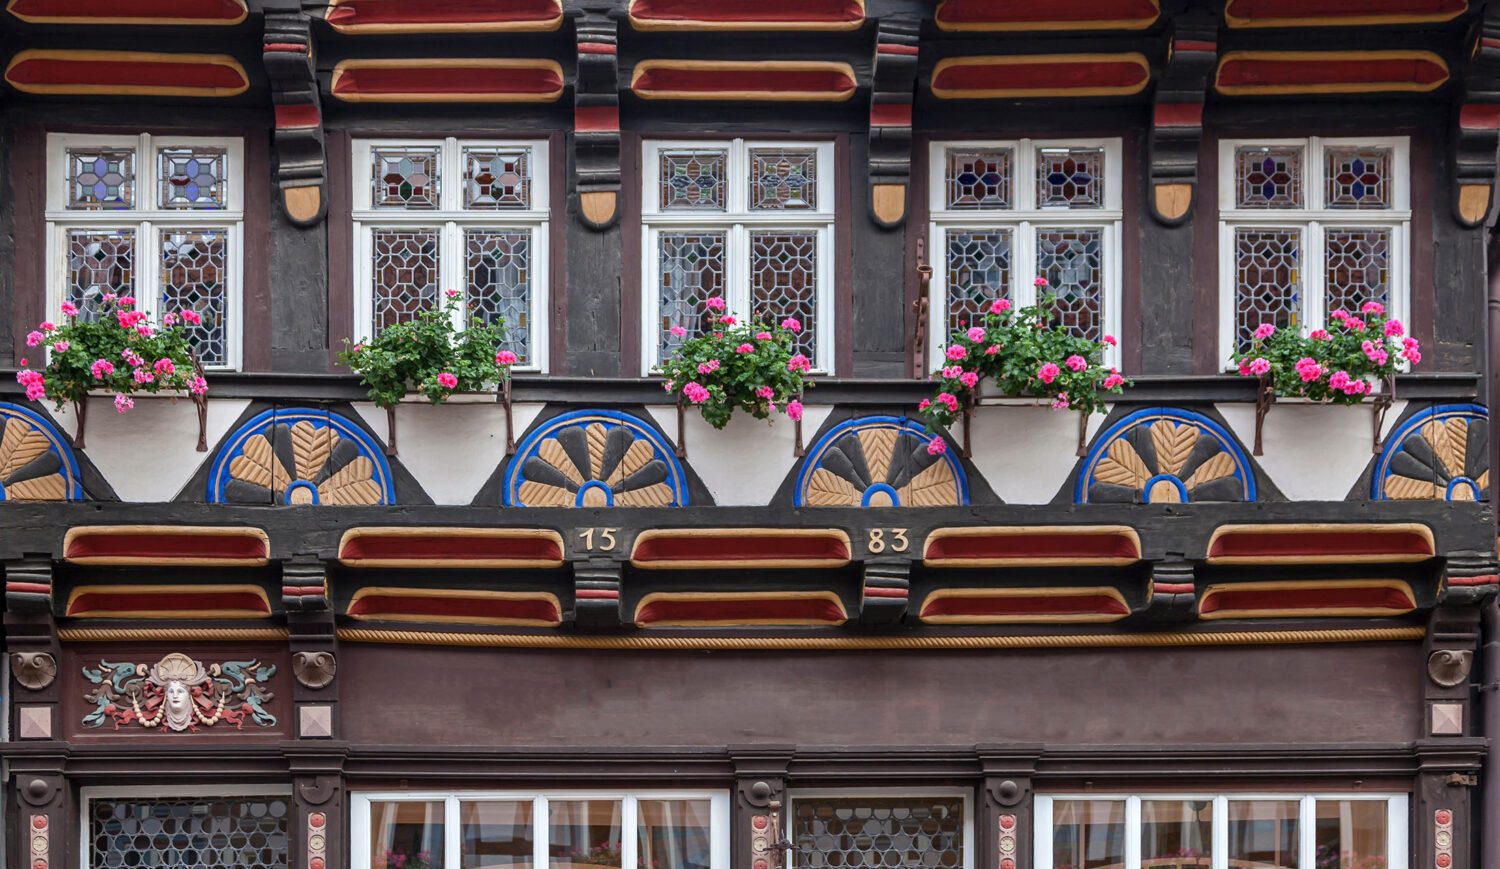 Die Altstadt von Wernigerode im Harz ist bekannt für ihre bunten Fassaden…